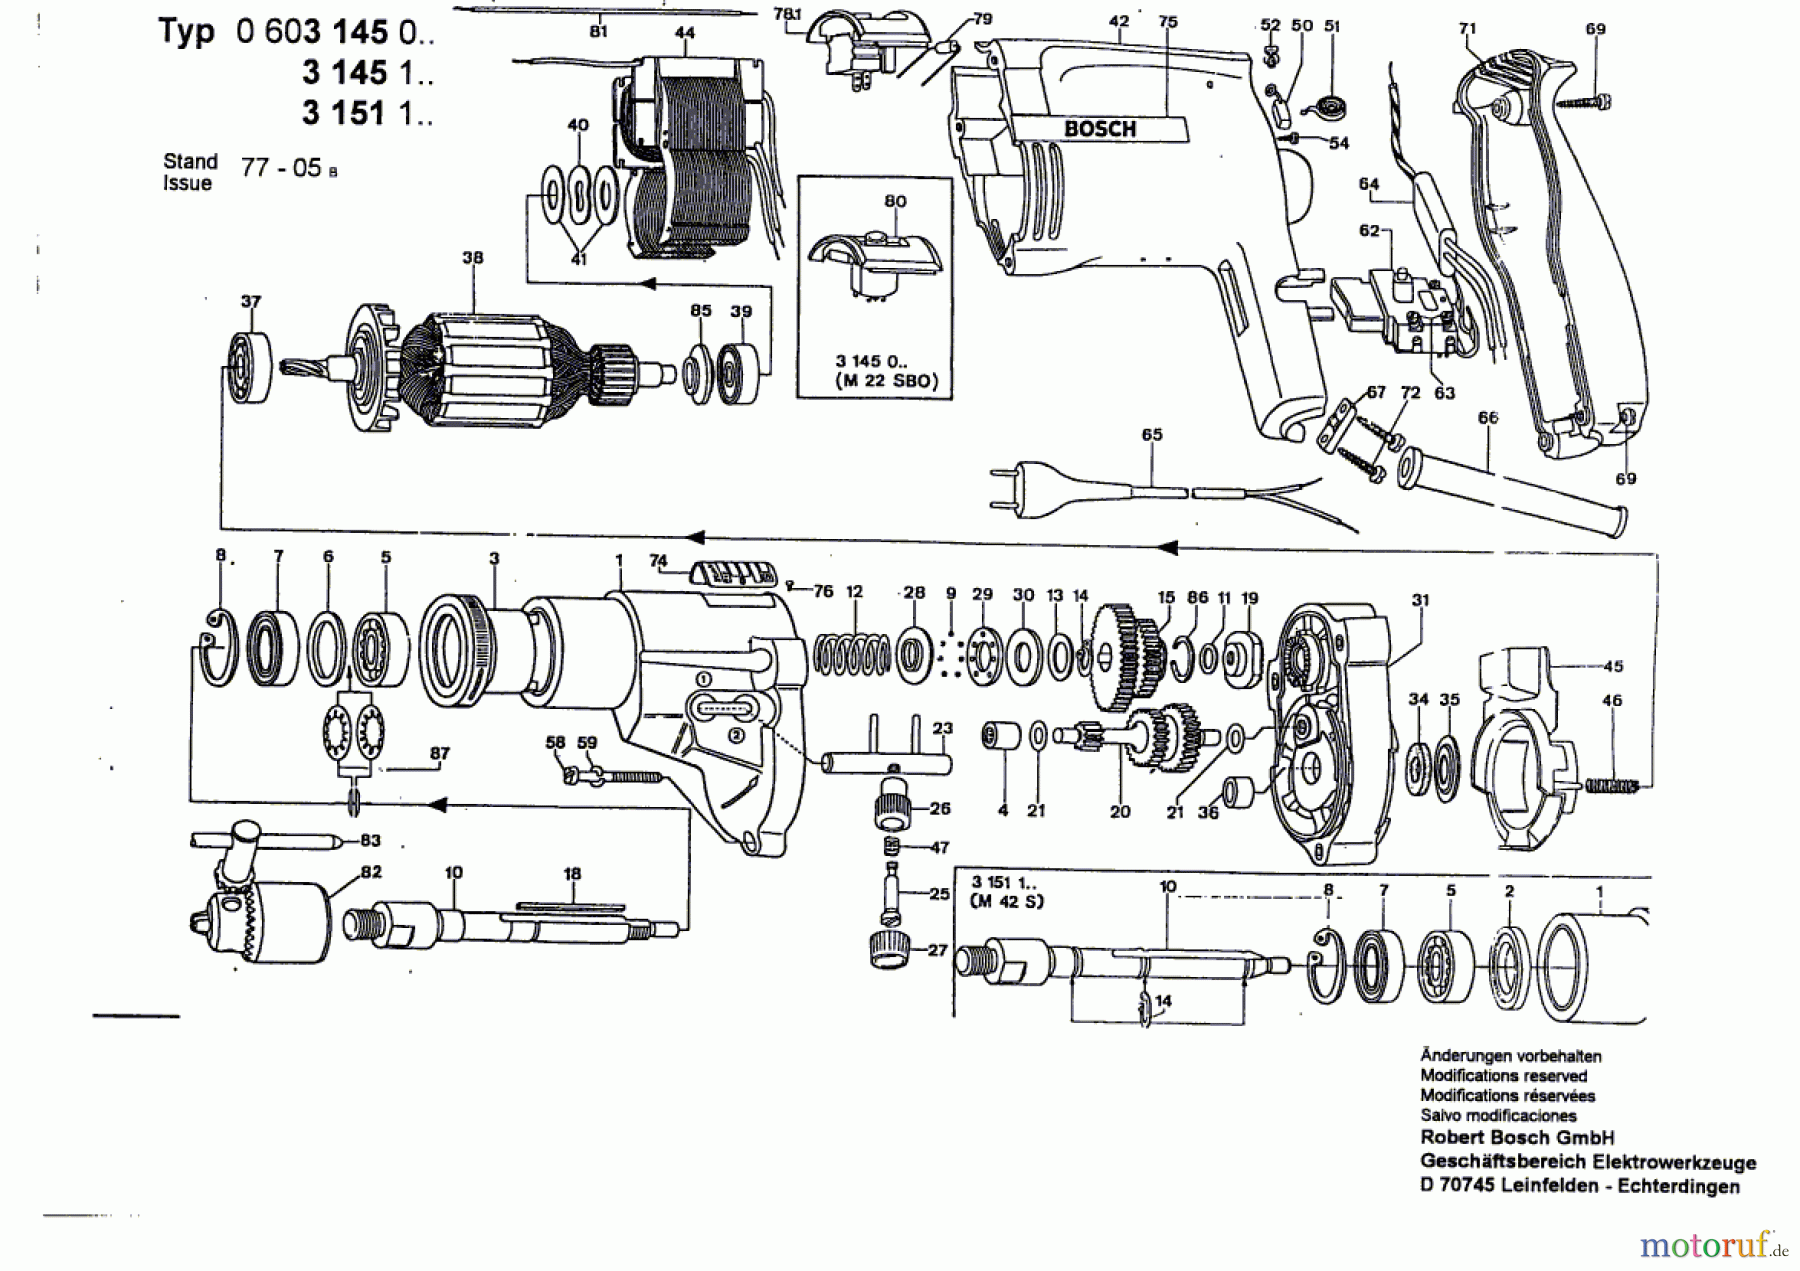  Bosch Werkzeug Schlagbohrmaschine M 42 SB Seite 1